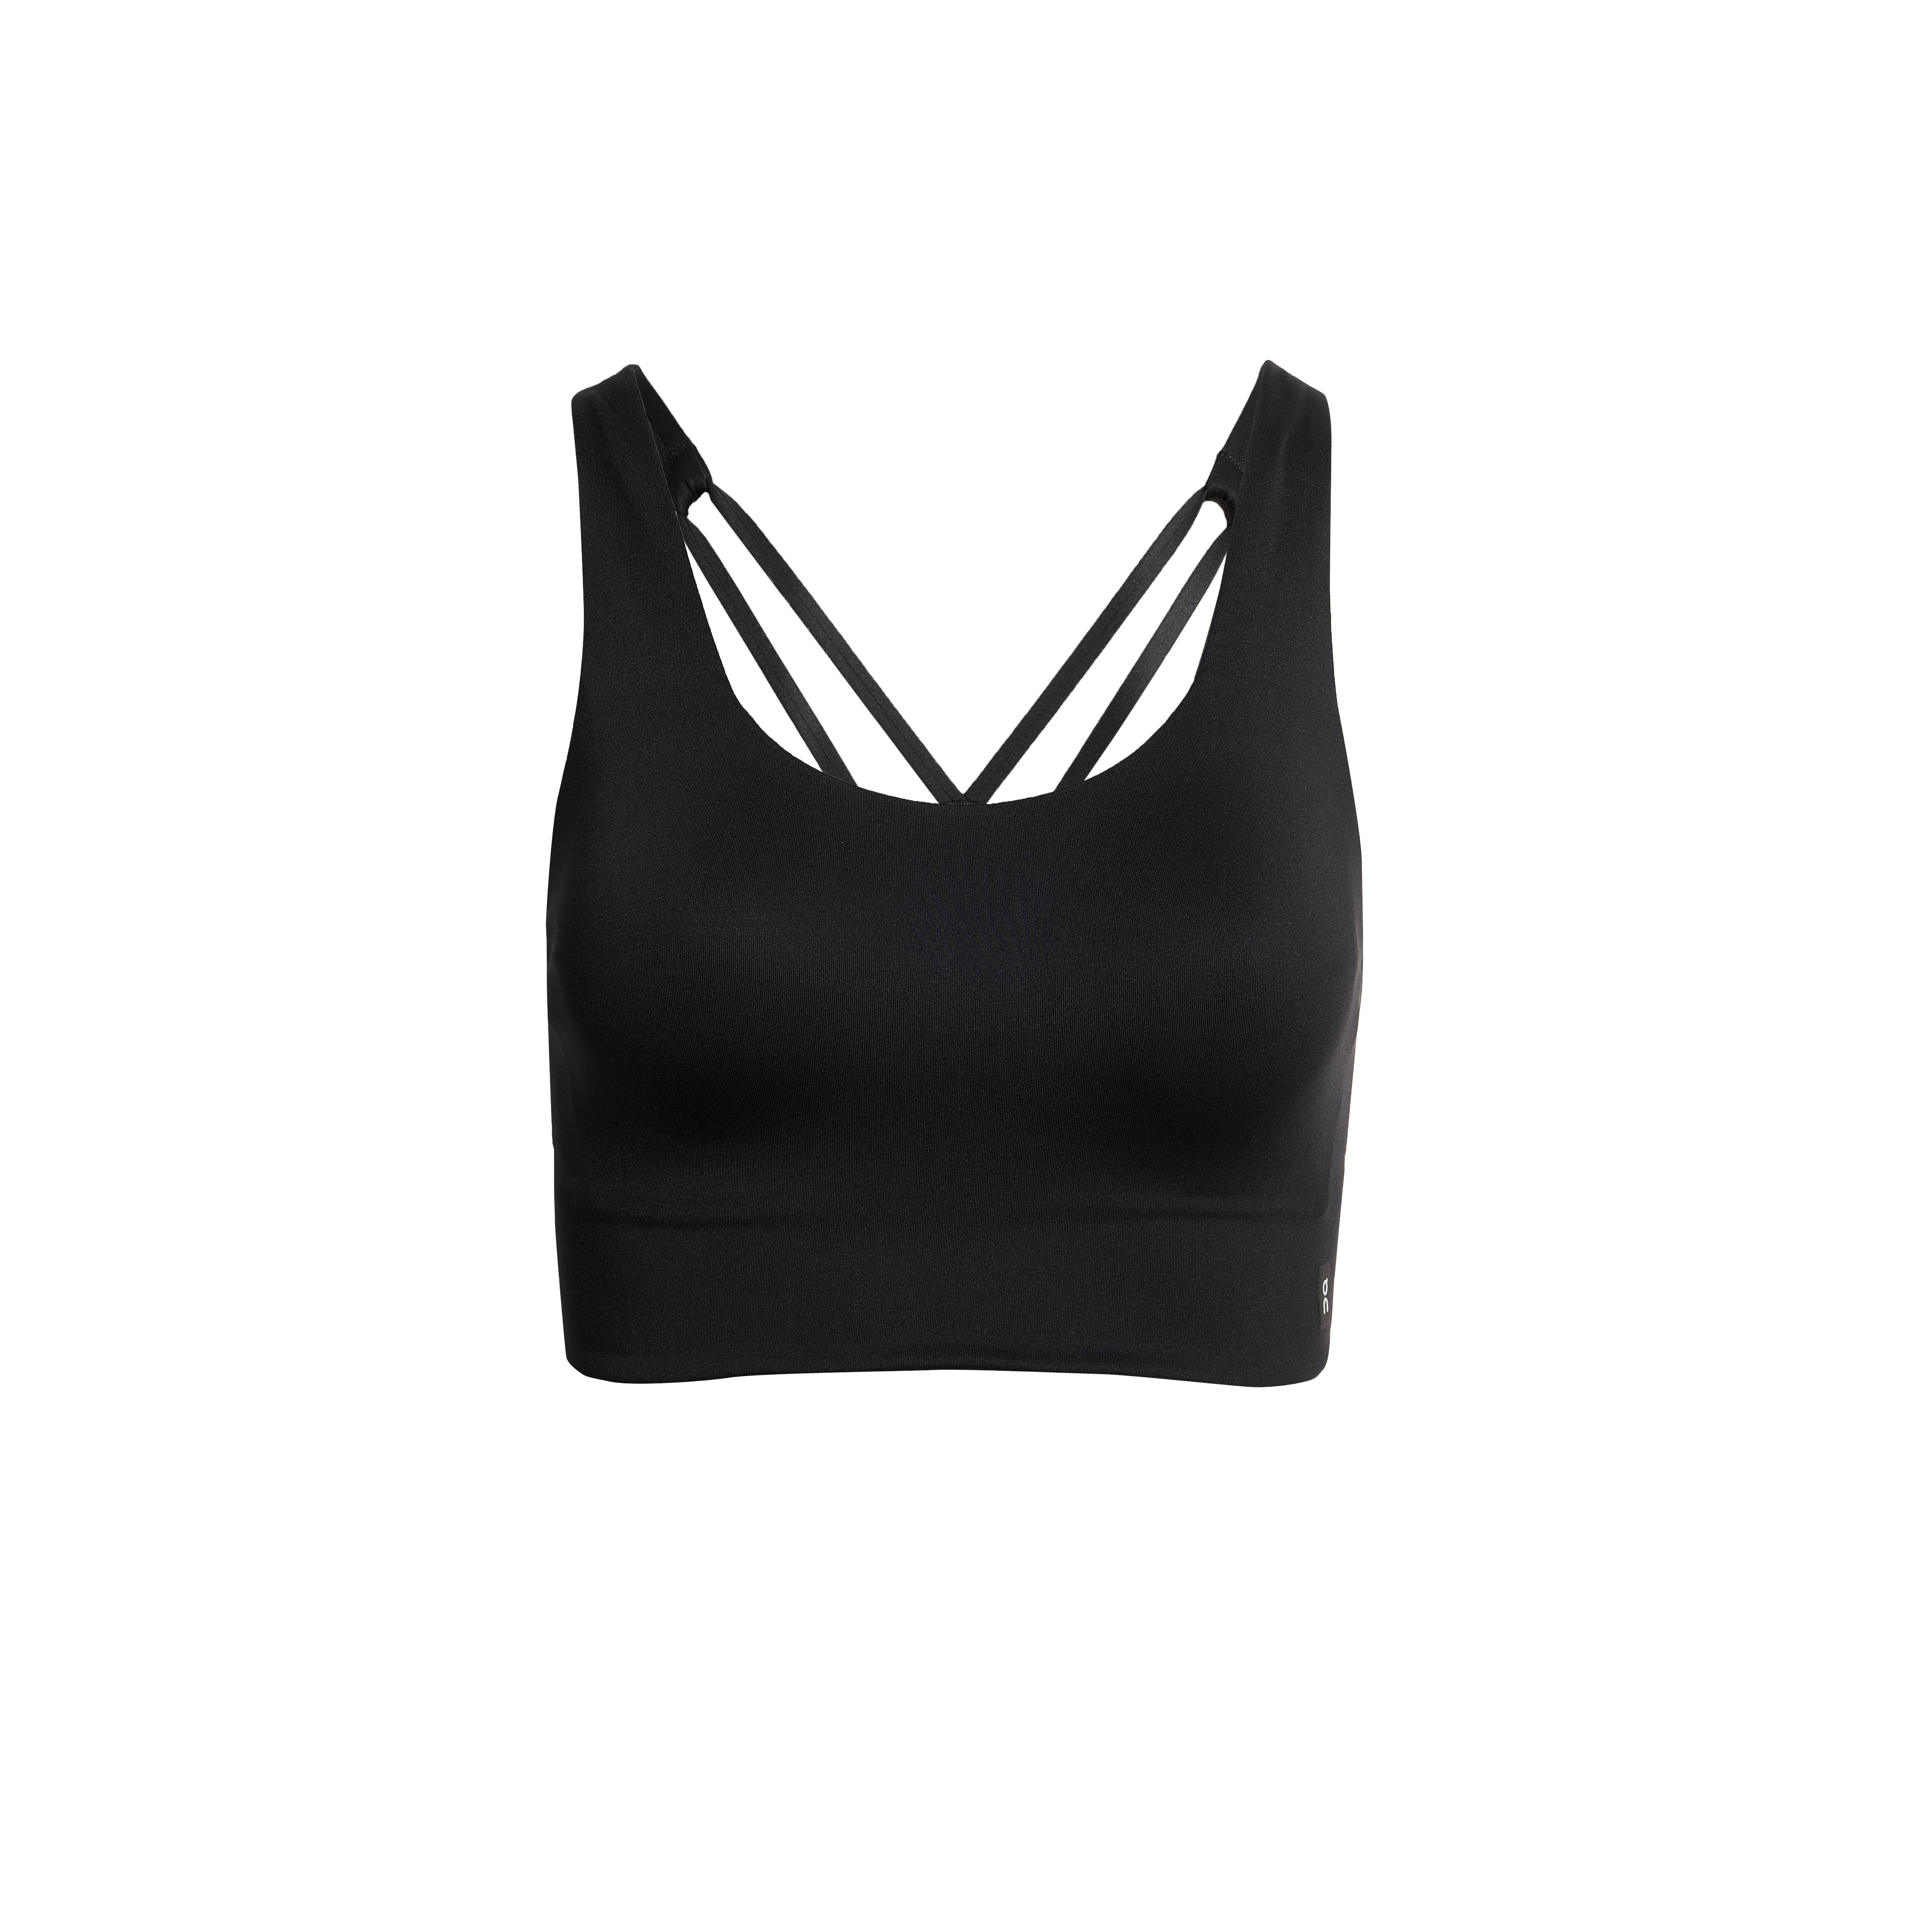 34C Wonderbra W5126 wireless sports bra black NWOT  Wonder bra, Black  sports bra, Wireless sports bra